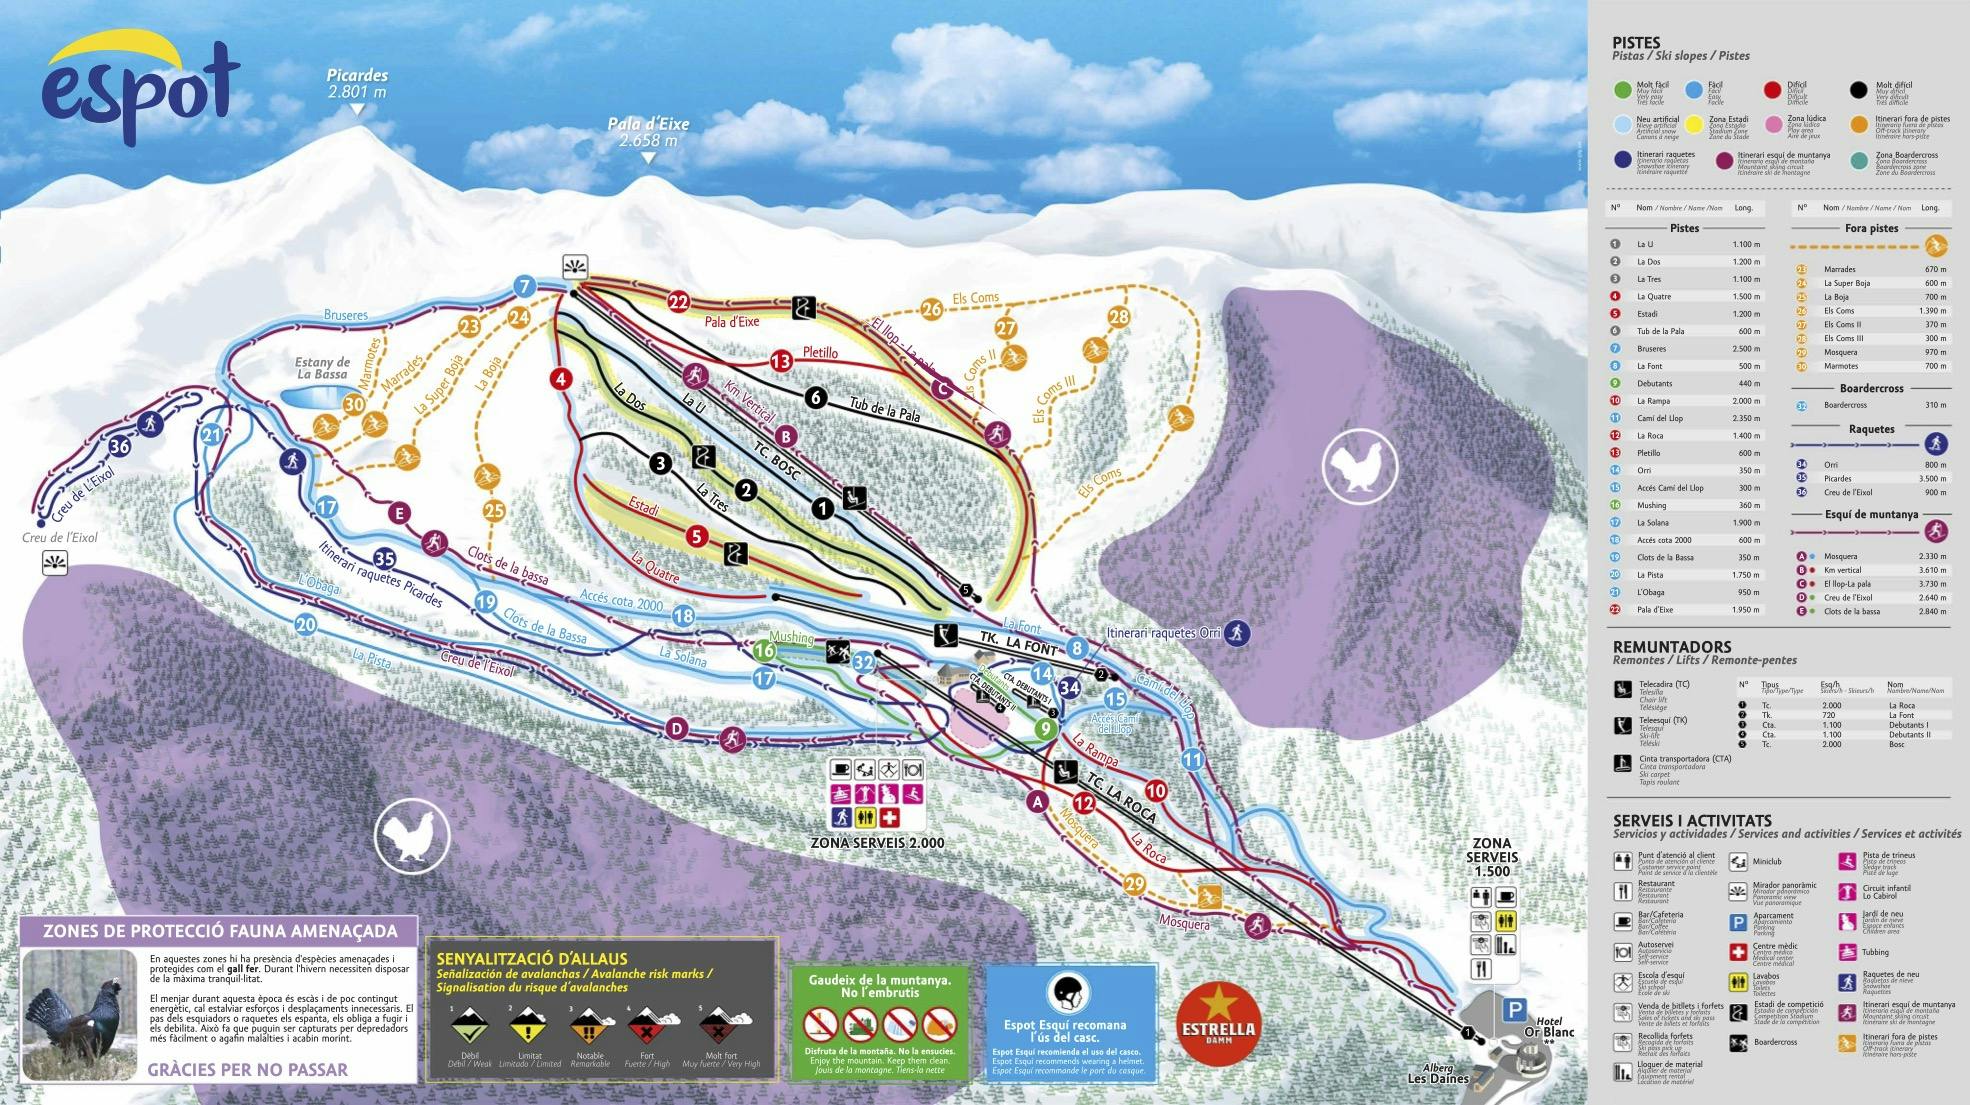 Copitos de Nieve - Estaciones de esquí, ski, snowboard - Mapa de la estación Espot Esquí